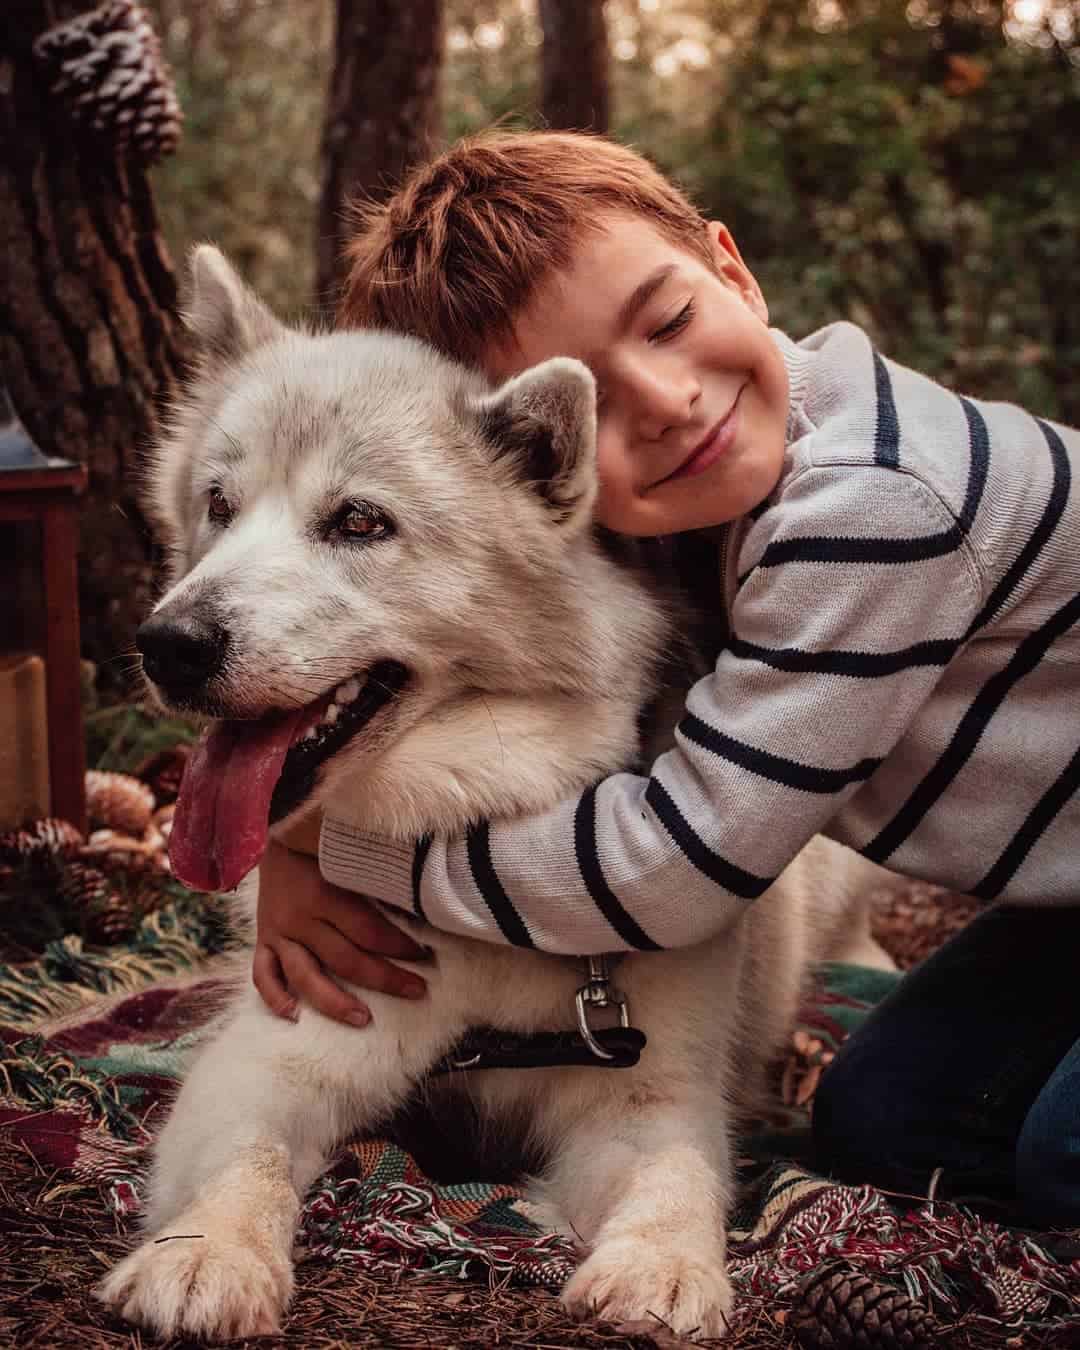 benefits of raising kids around animals